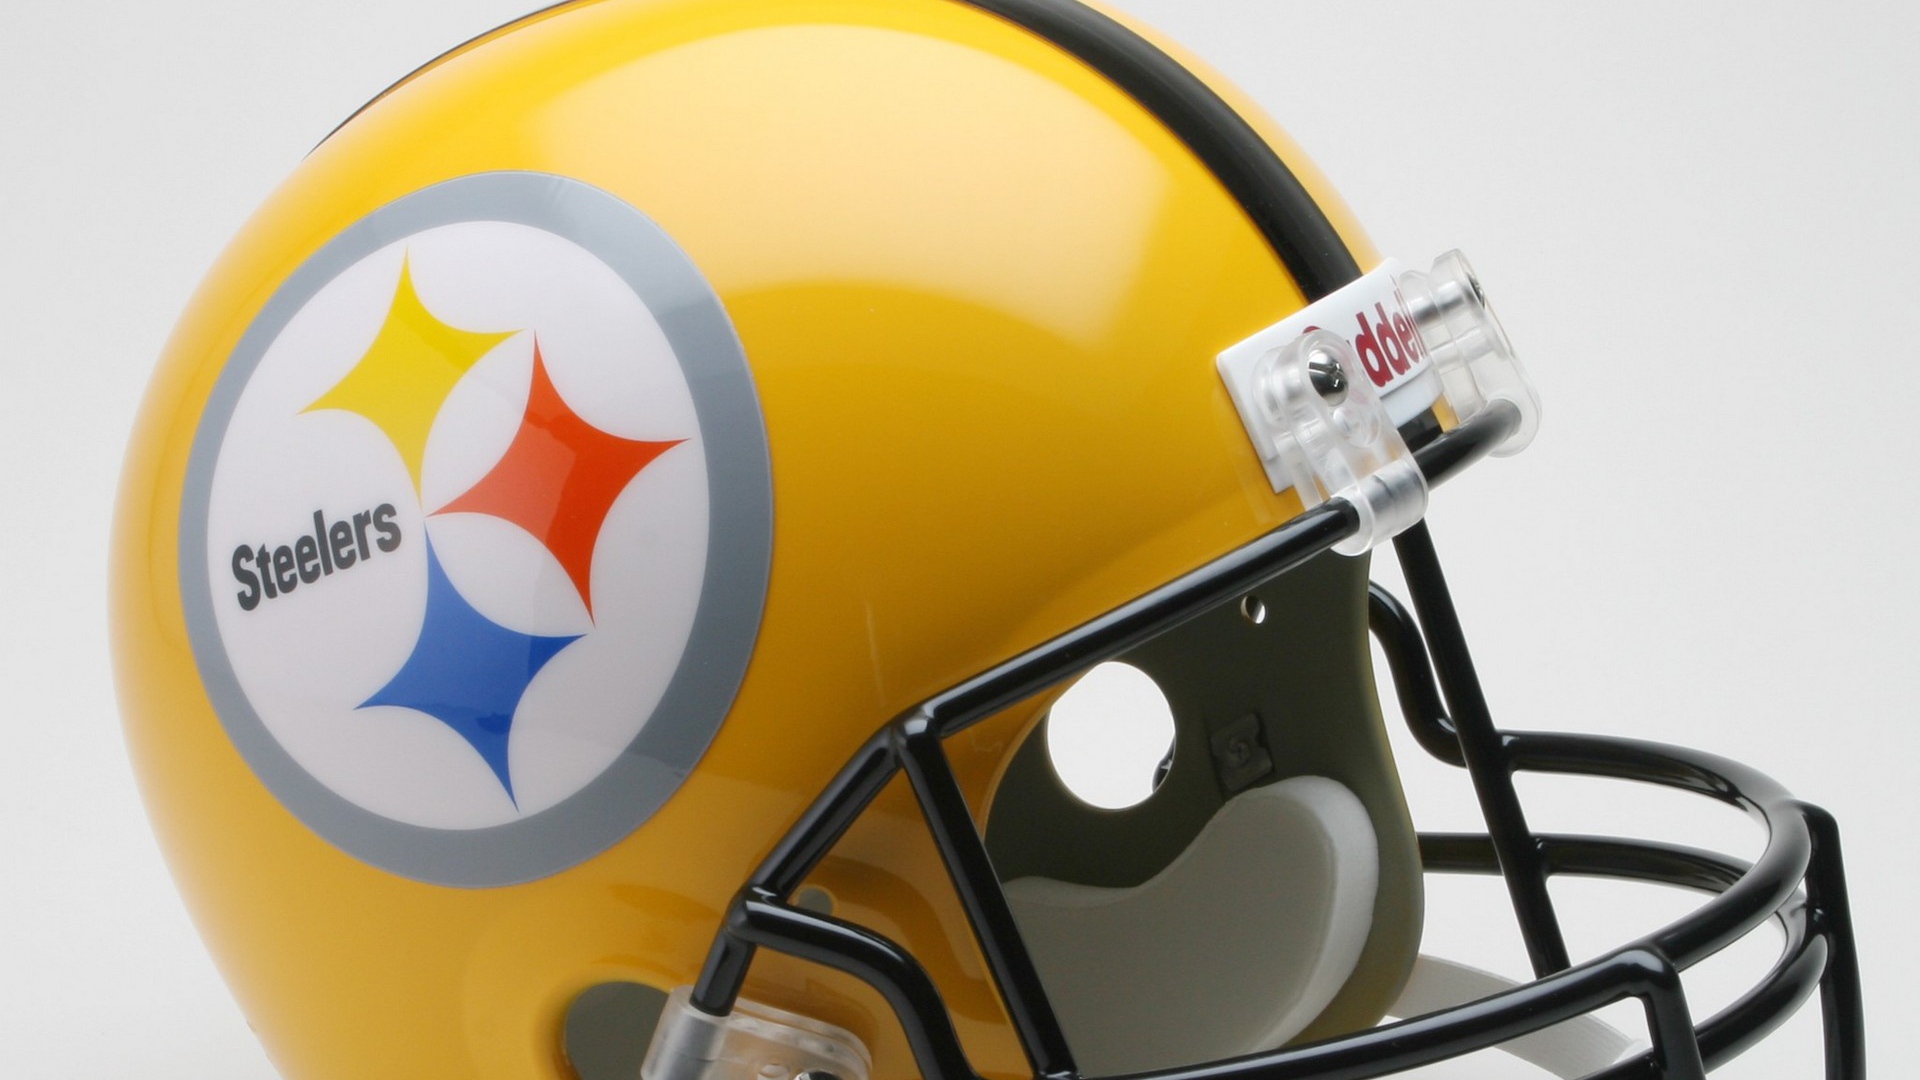 Steelers American Football Helmet Full HD 1080p Background